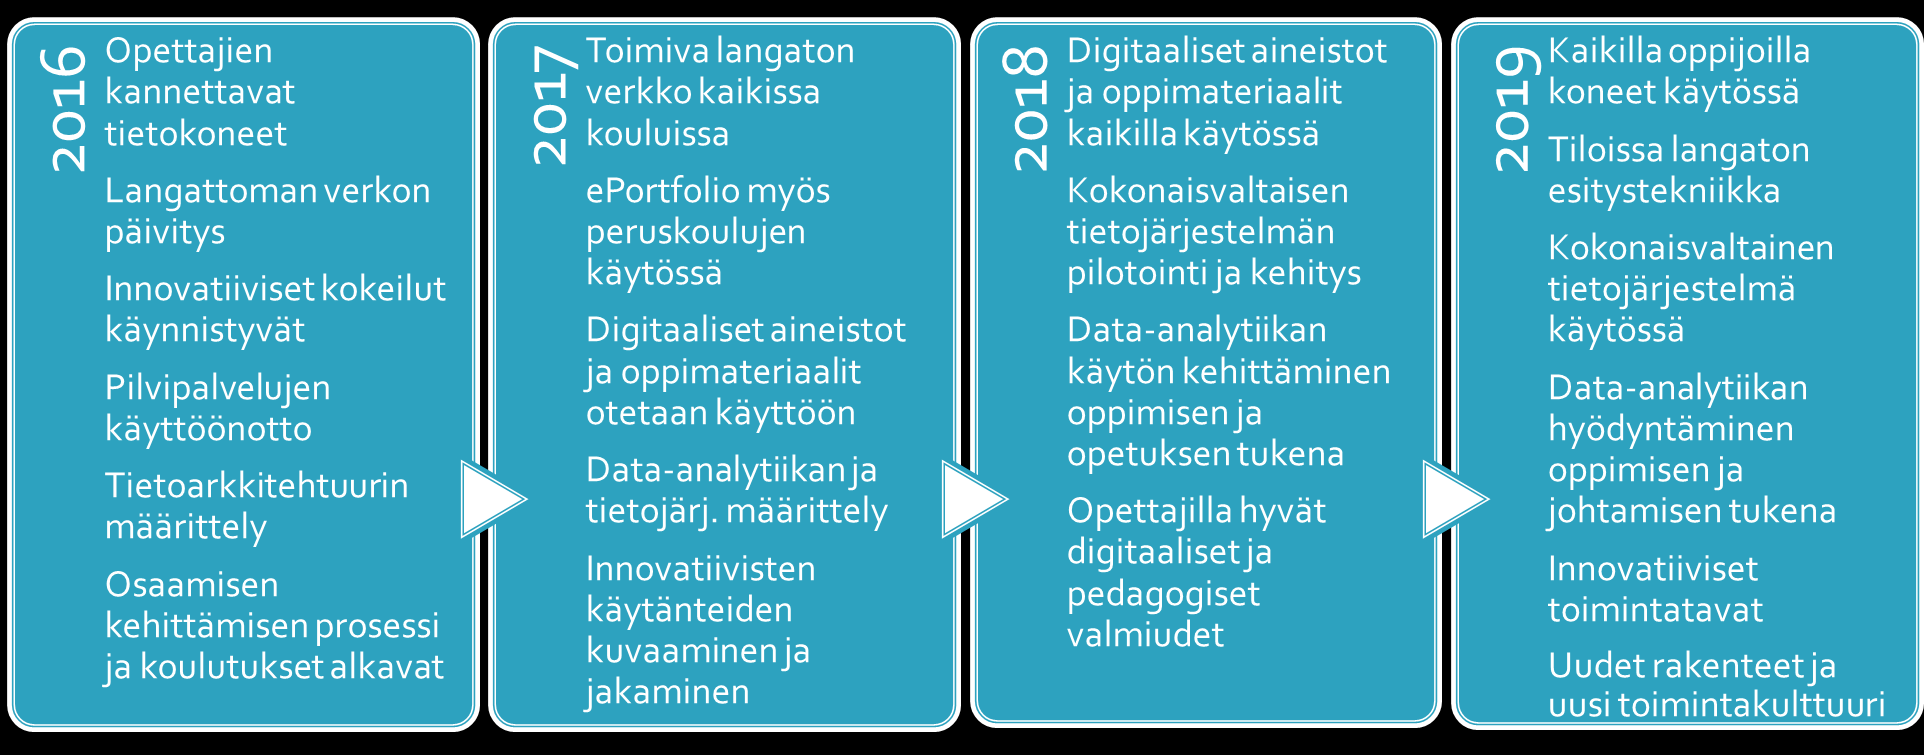 7 3. Digitalisaatio-ohjelman eteneminen vuosittain 4. Digitalisaatio-ohjelman toteutumisen mittarit Digitalisaatio-ohjelman toteutumista seurataan vuosittain seuraavilla mittareilla: 1.